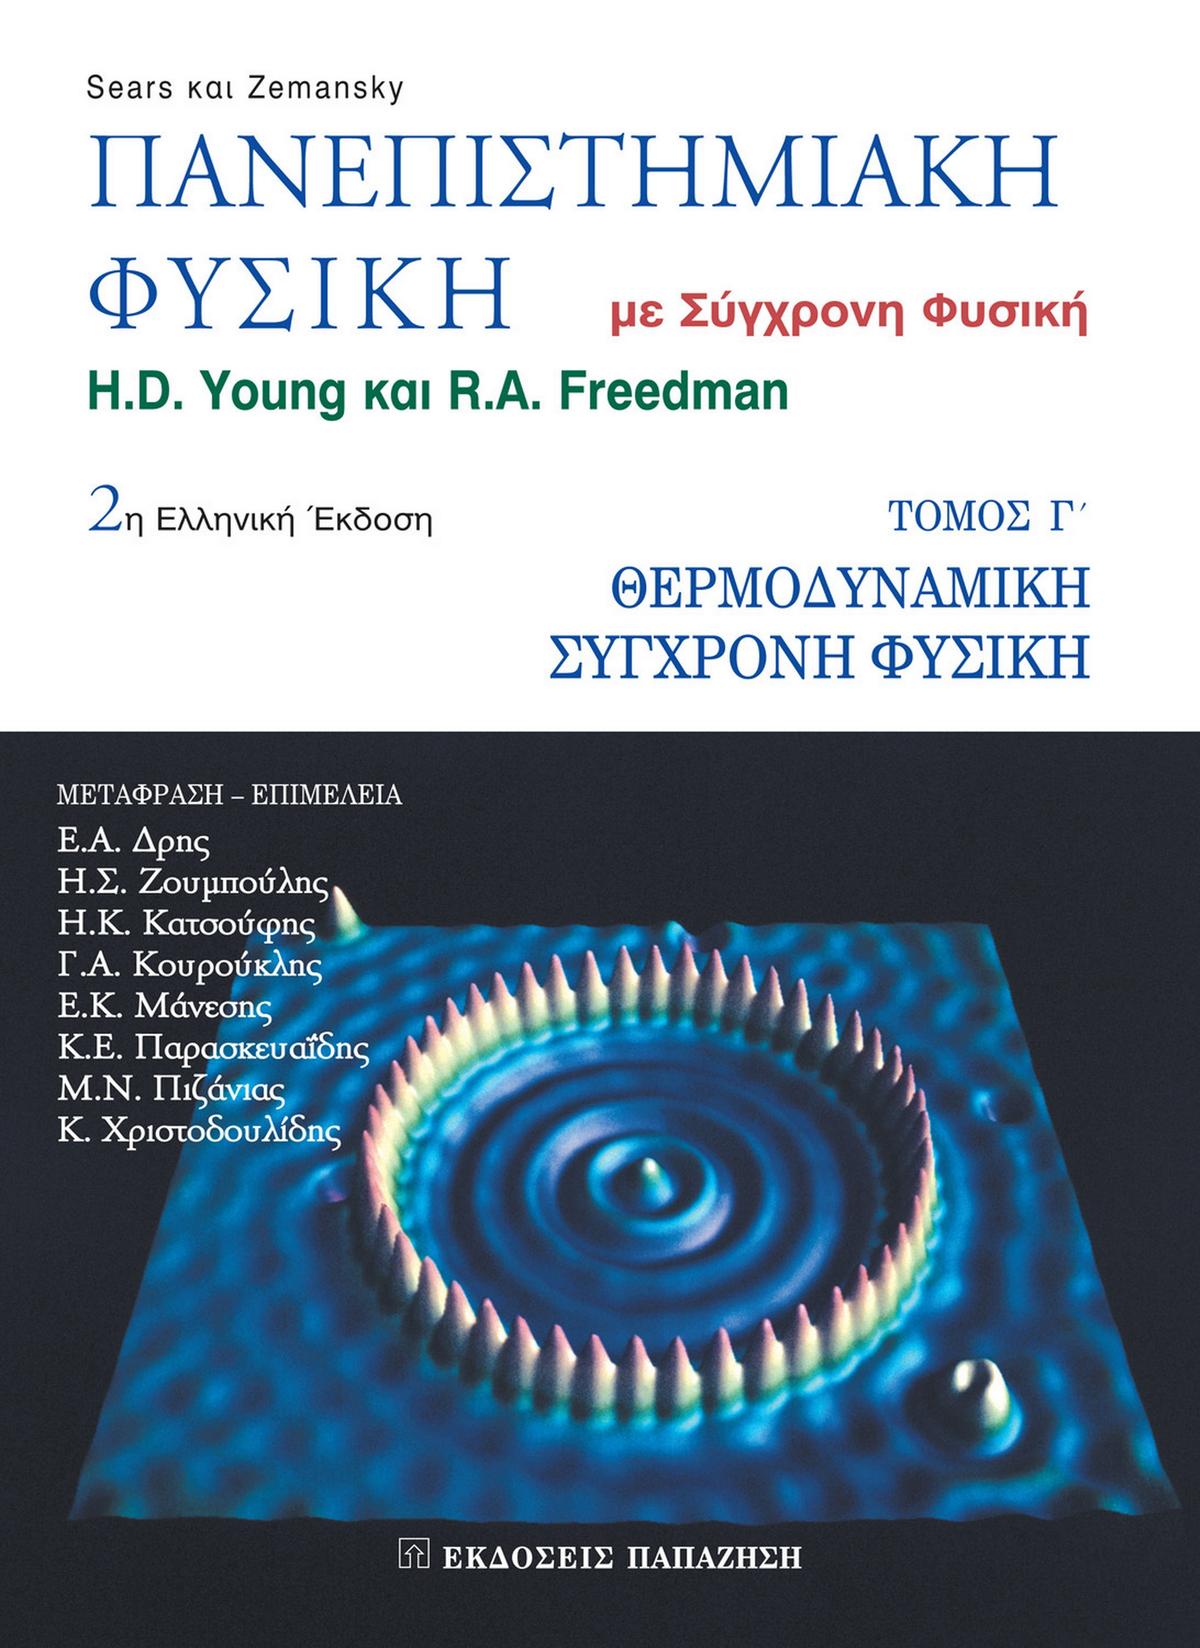 Πανεπιστημιακή φυσική
Με σύγχρονη φυσική  2η ελληνική έκδοση